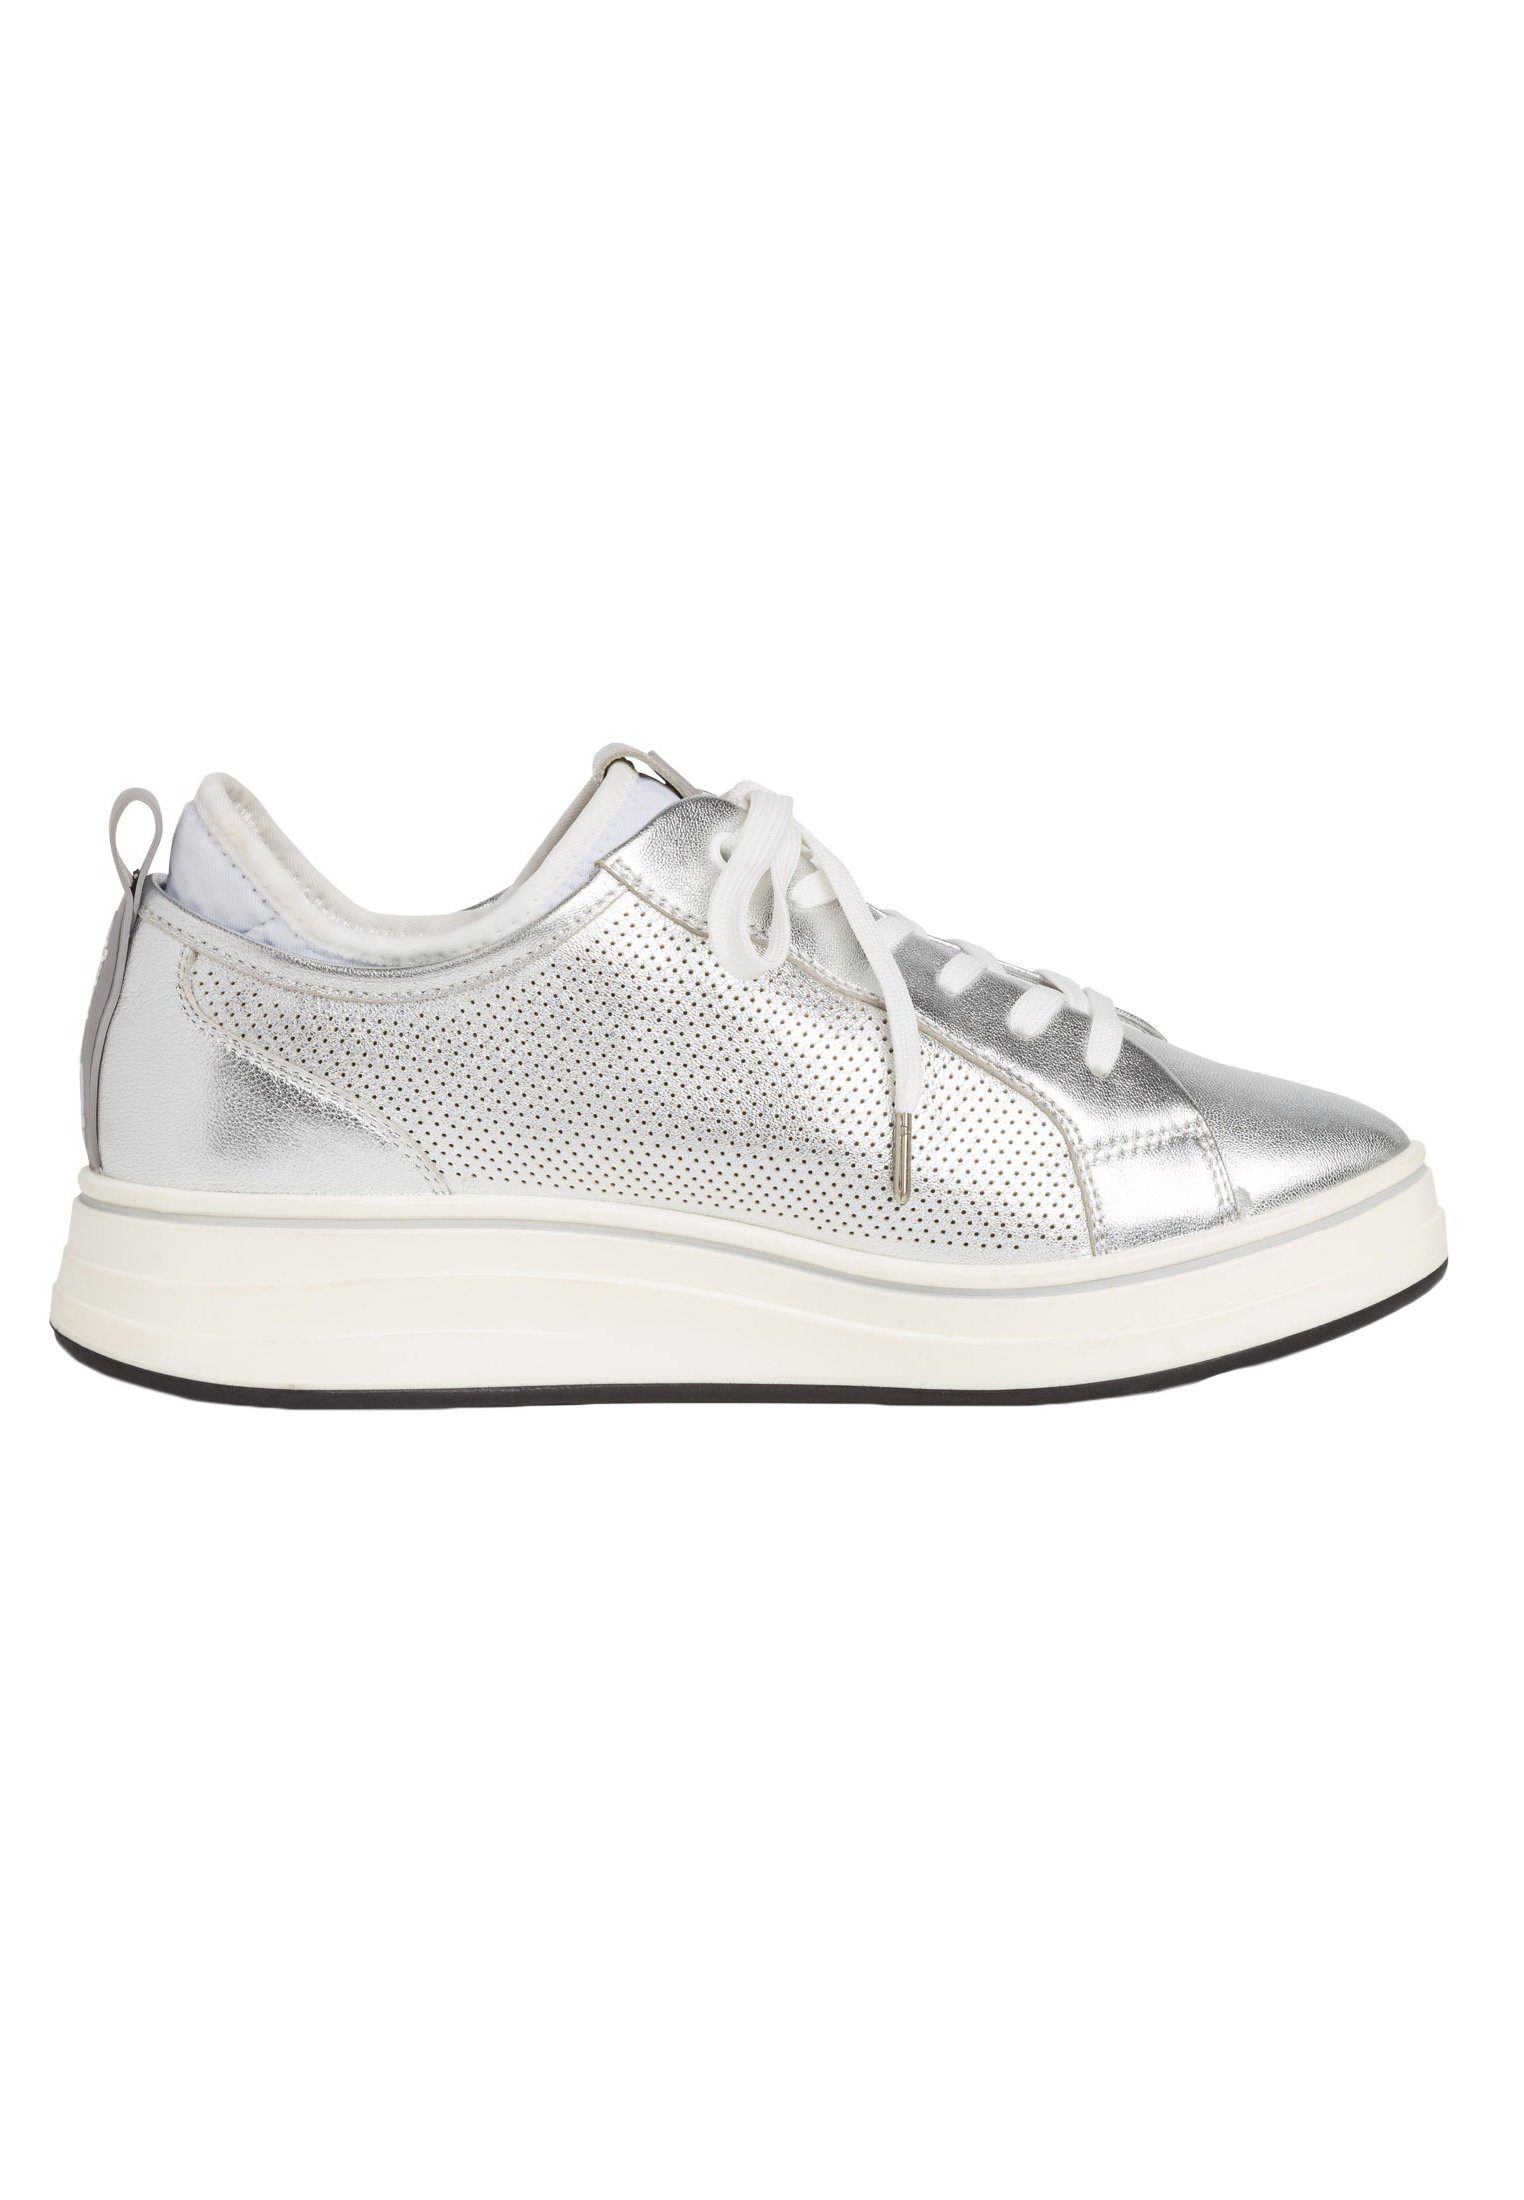 Tamaris 1-23716-24 950 Sneaker White Silver